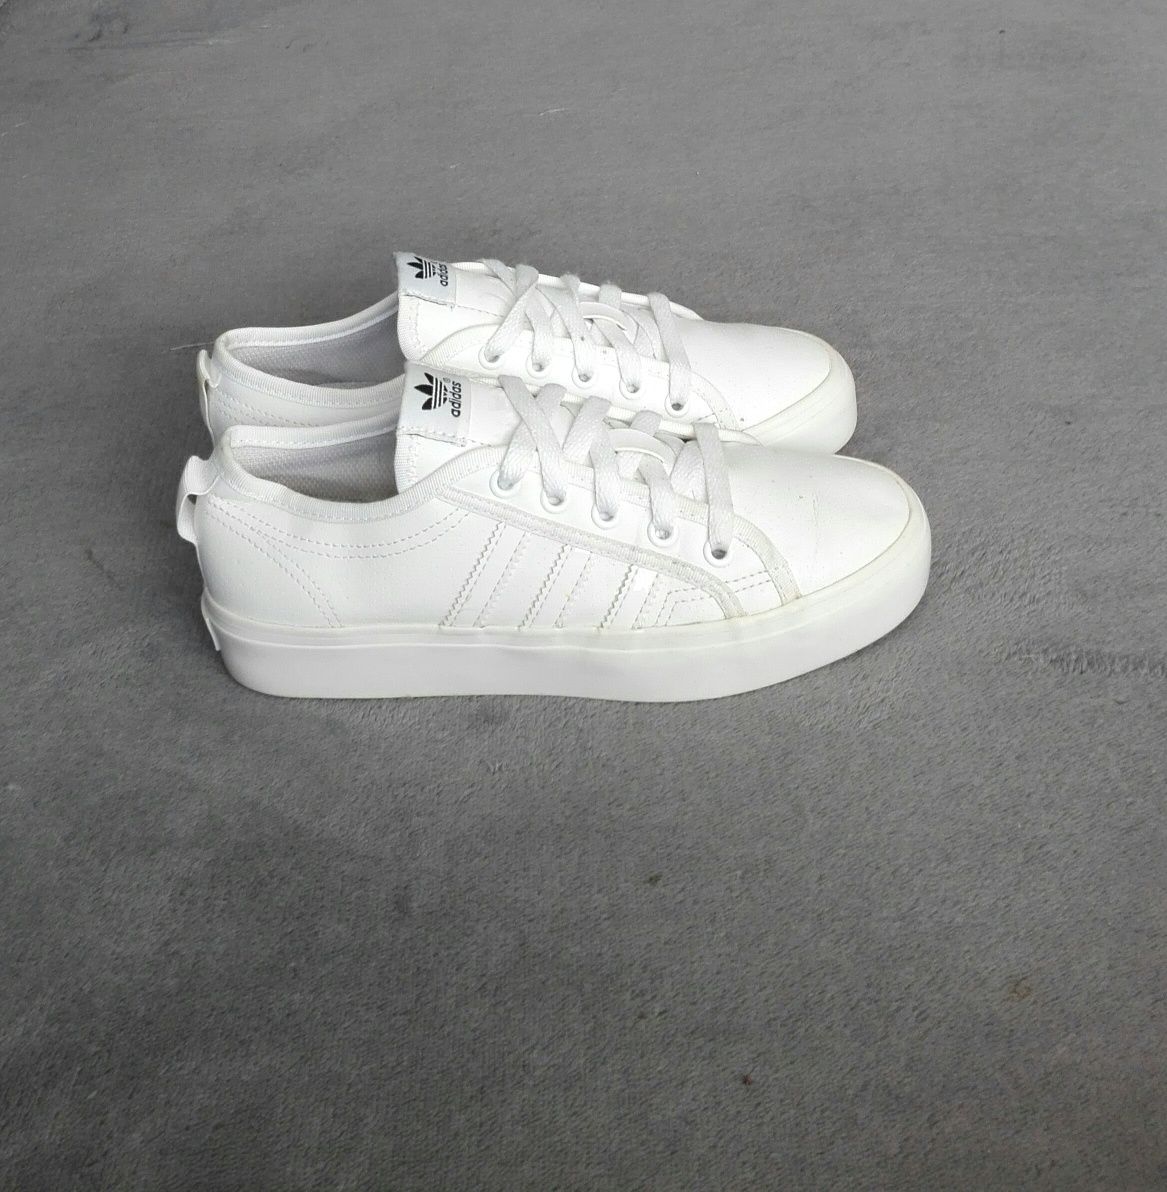 Jak nowe Adidas Nizza oryginalne białe buty sportowe rozm 36 2/3 37